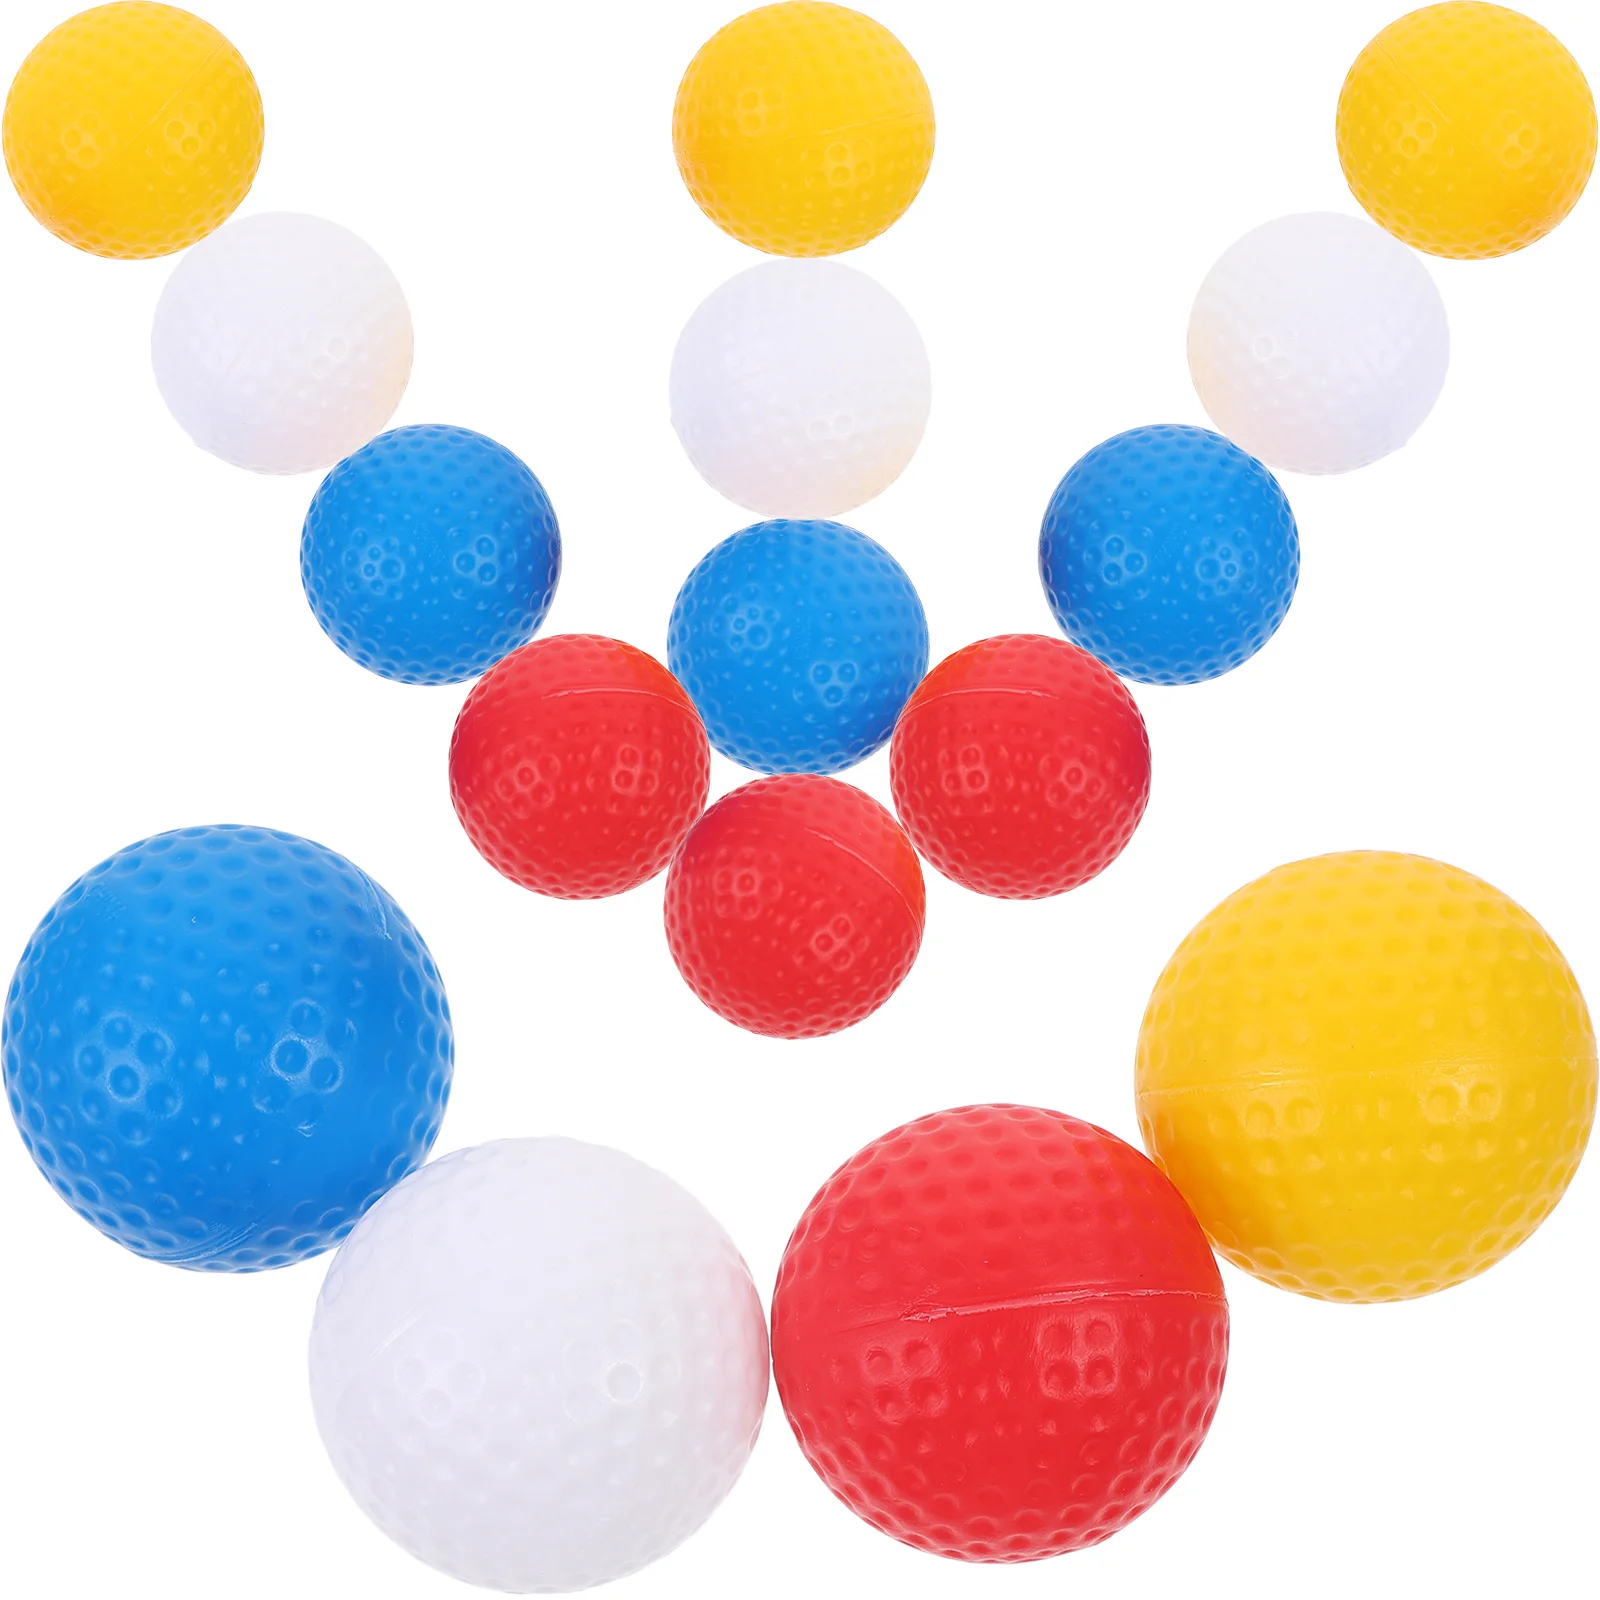 Мячи для игры в гольф, Цветные мячи для гольфа, маленькие мячи для гольфа, портативные мячи для игры в гольф 10 шт компл тренировочные мячи для гольфа 1 7 дюйма пэ пластиковые пустотелые мячи для гольфа для зоны вождения тренировок по качели домаш